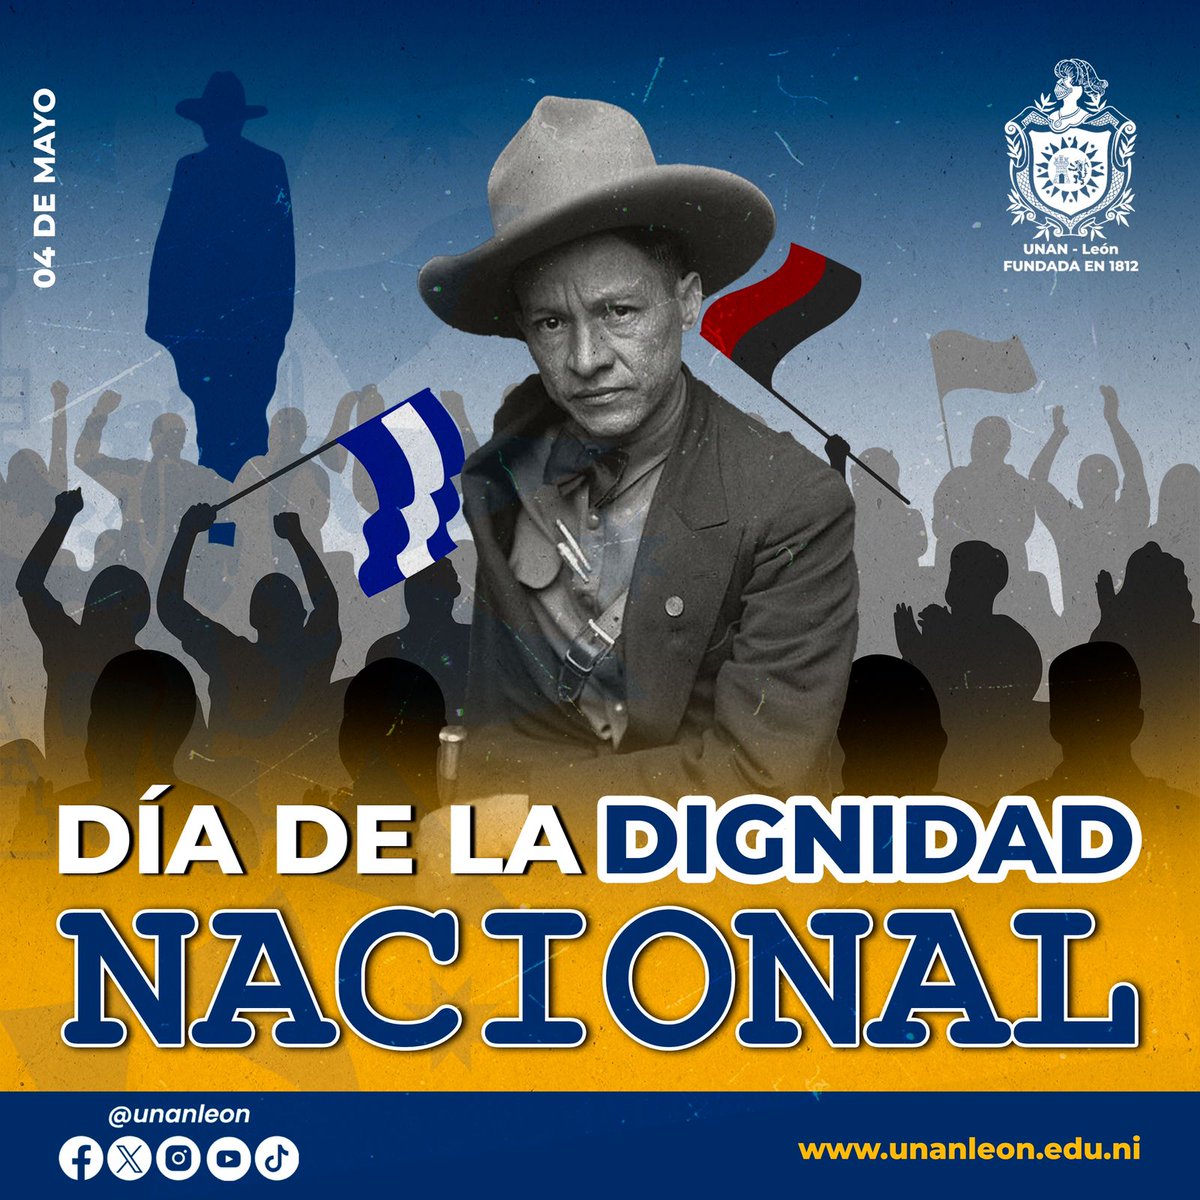 #Nicaragua hoy esta de fiesta celebrando el Día de la Dignidad Nacional, seguimos trabajando juntos y #UnidosEnVictorias por un futuro donde todos podamos vivir con dignidad y respeto. #SoberaníayDignidadNacional @HeraclesNic @CarmenNica